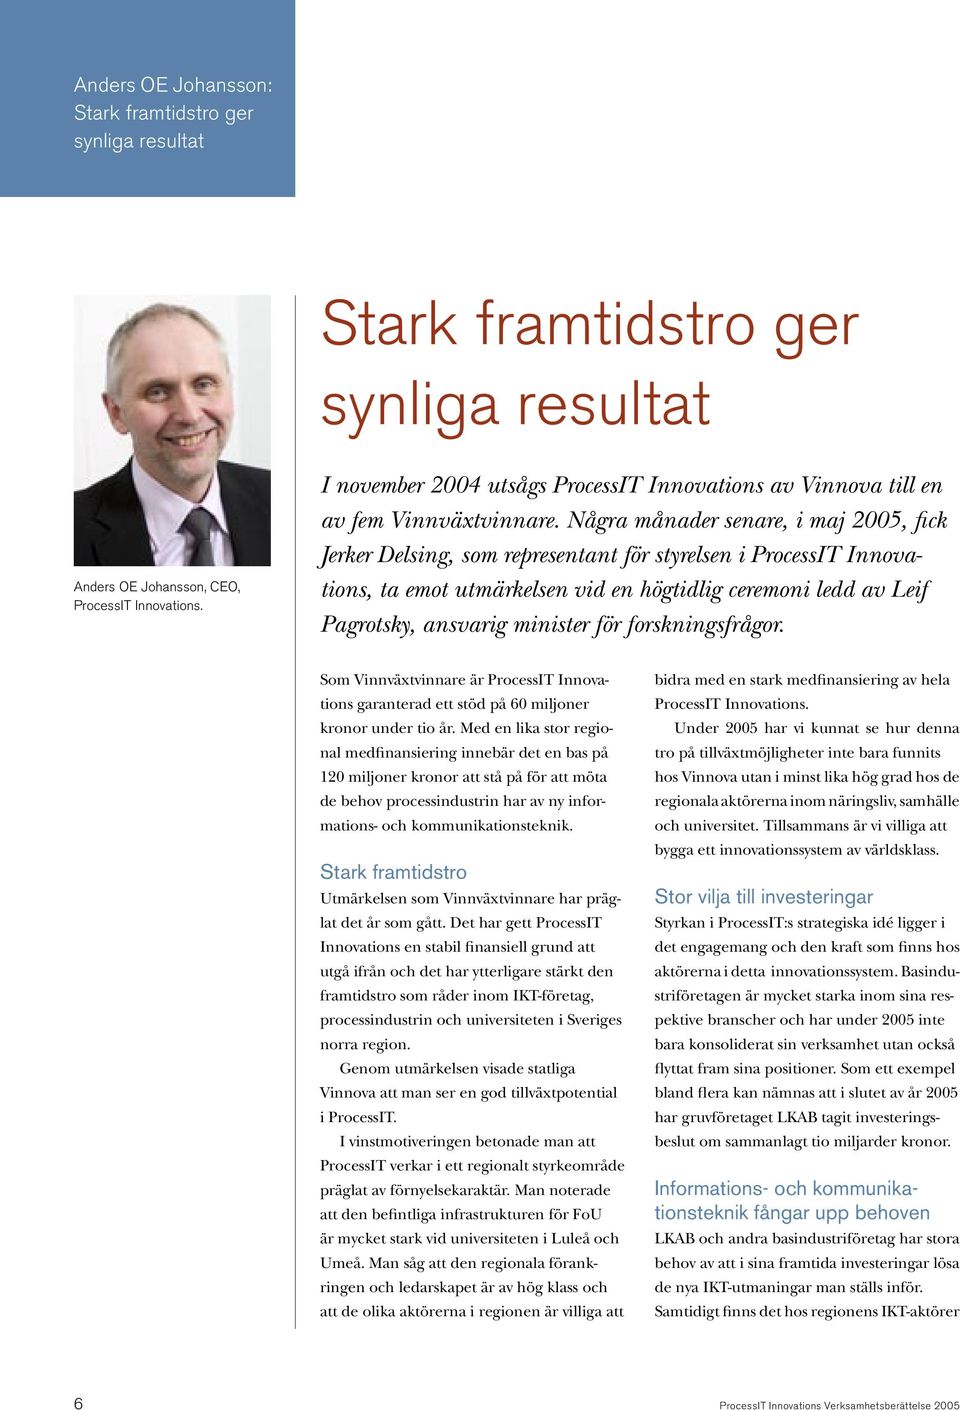 Några månader senare, i maj 2005, fick Jerker Delsing, som representant för styrelsen i ProcessIT Innovations, ta emot utmärkelsen vid en högtidlig ceremoni ledd av Leif Pagrotsky, ansvarig minister